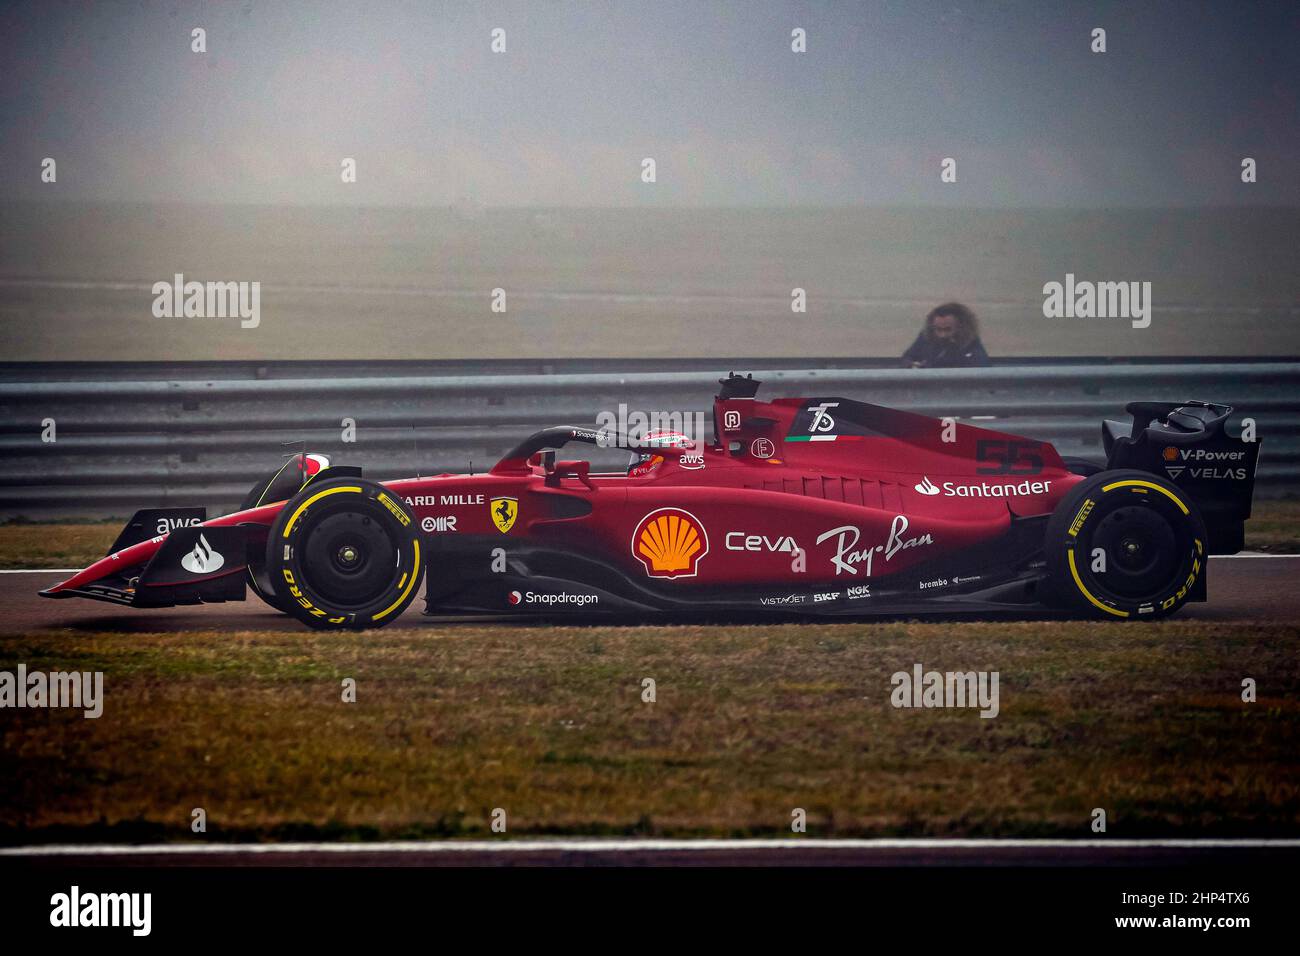 Scuderia Ferrari : les photos de la F1-75